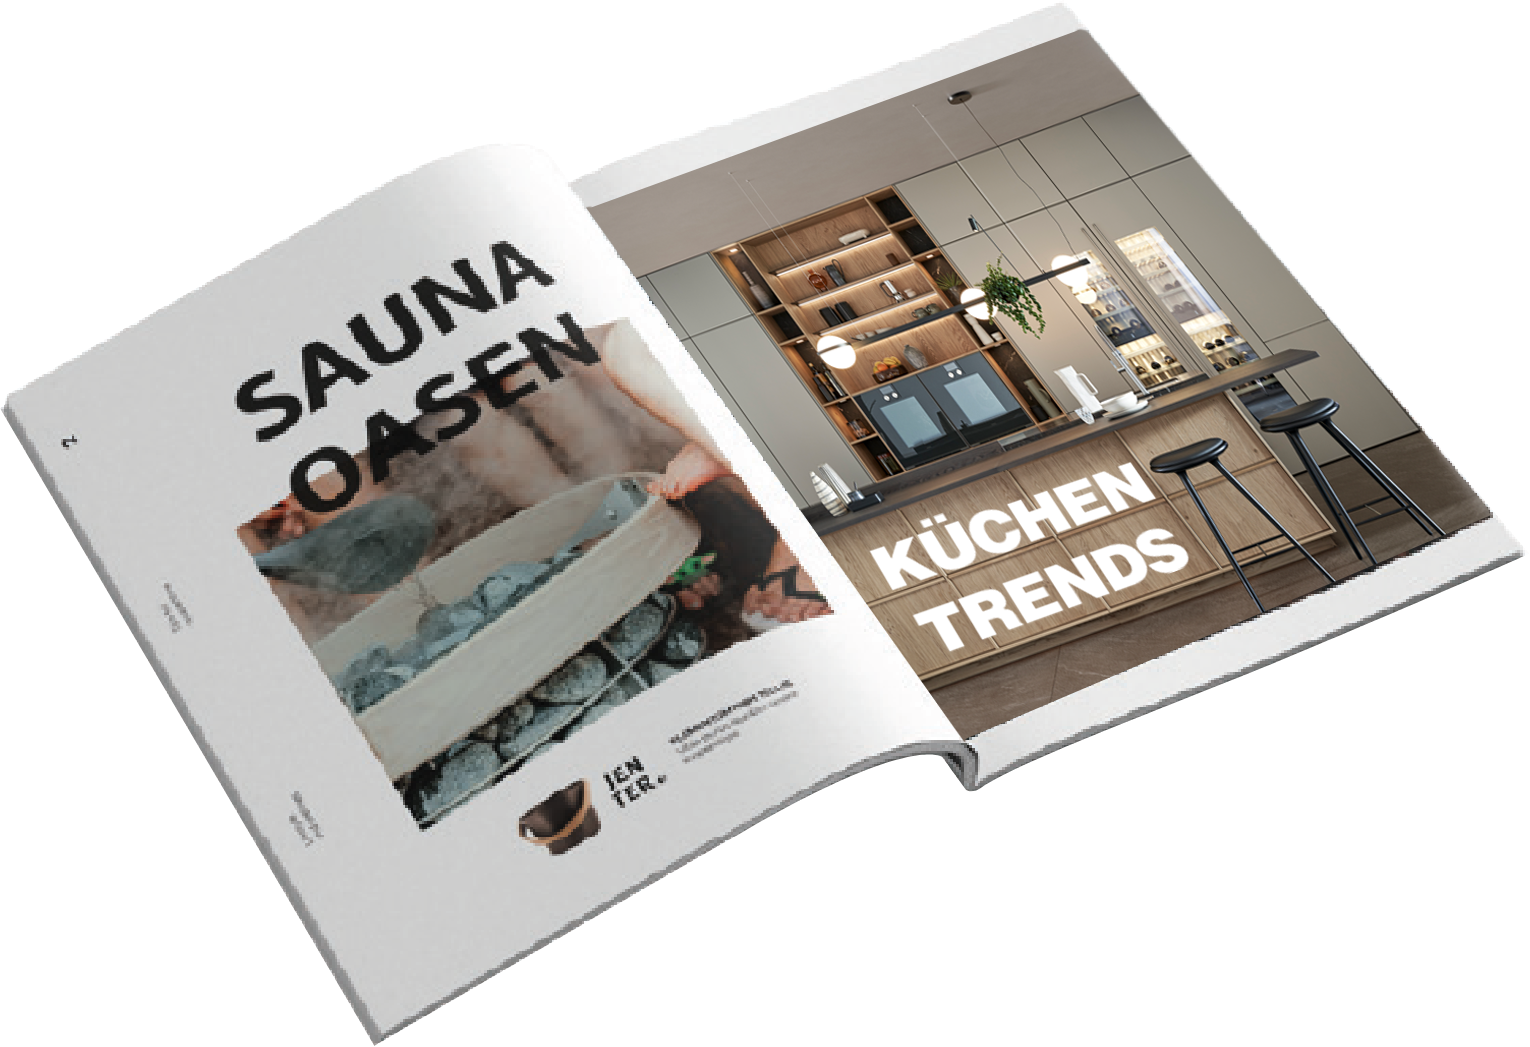 Küchenstudio und Sauna Katalog. Es ist etwa die Mitte des Katalogs aufgeschlagen